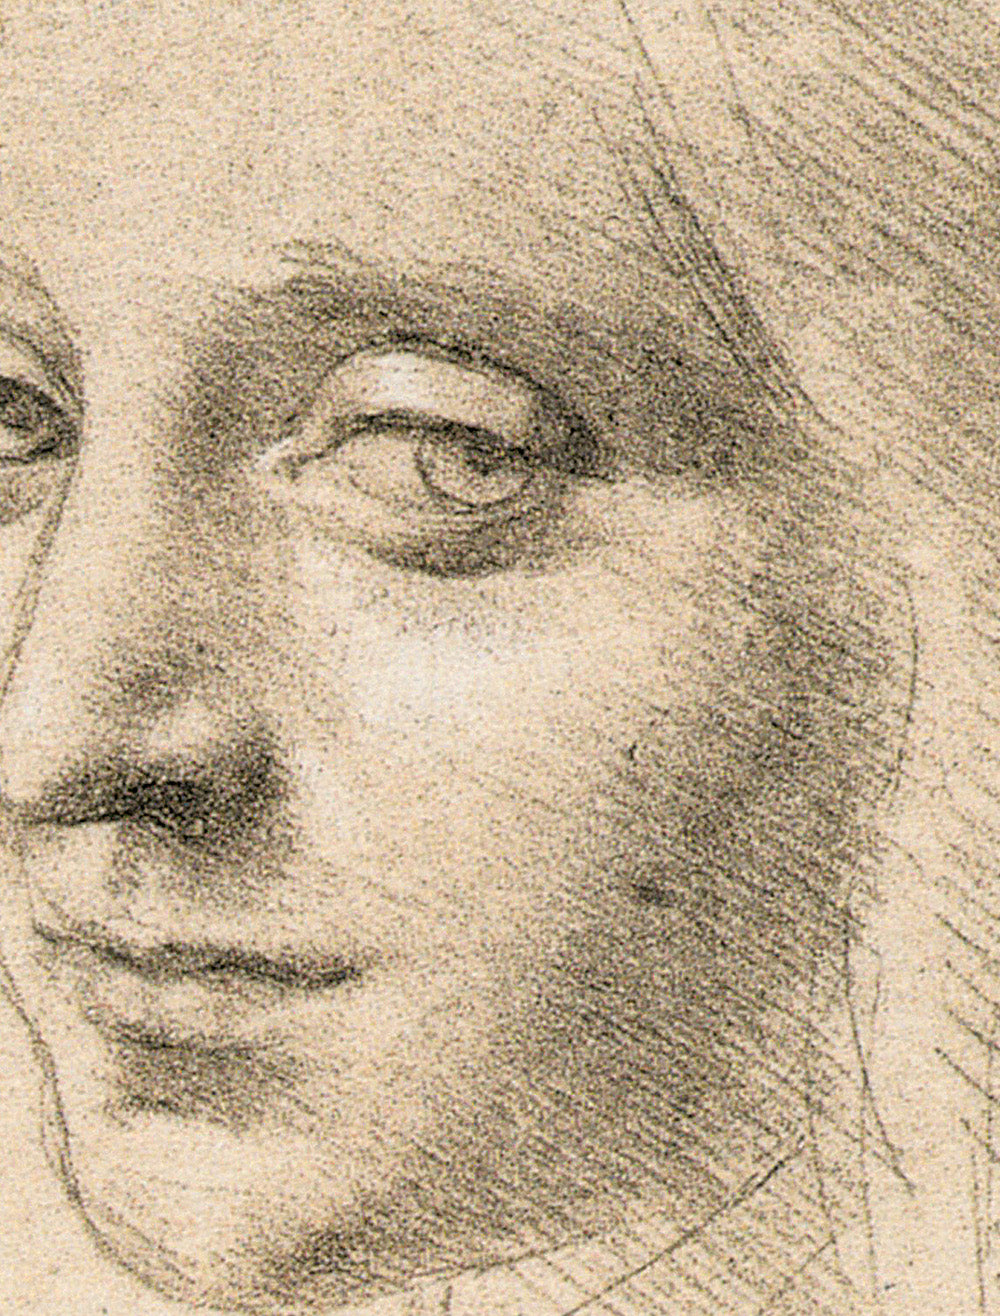 La bellezza::Leonardo da Vinci. Artista / scienziato